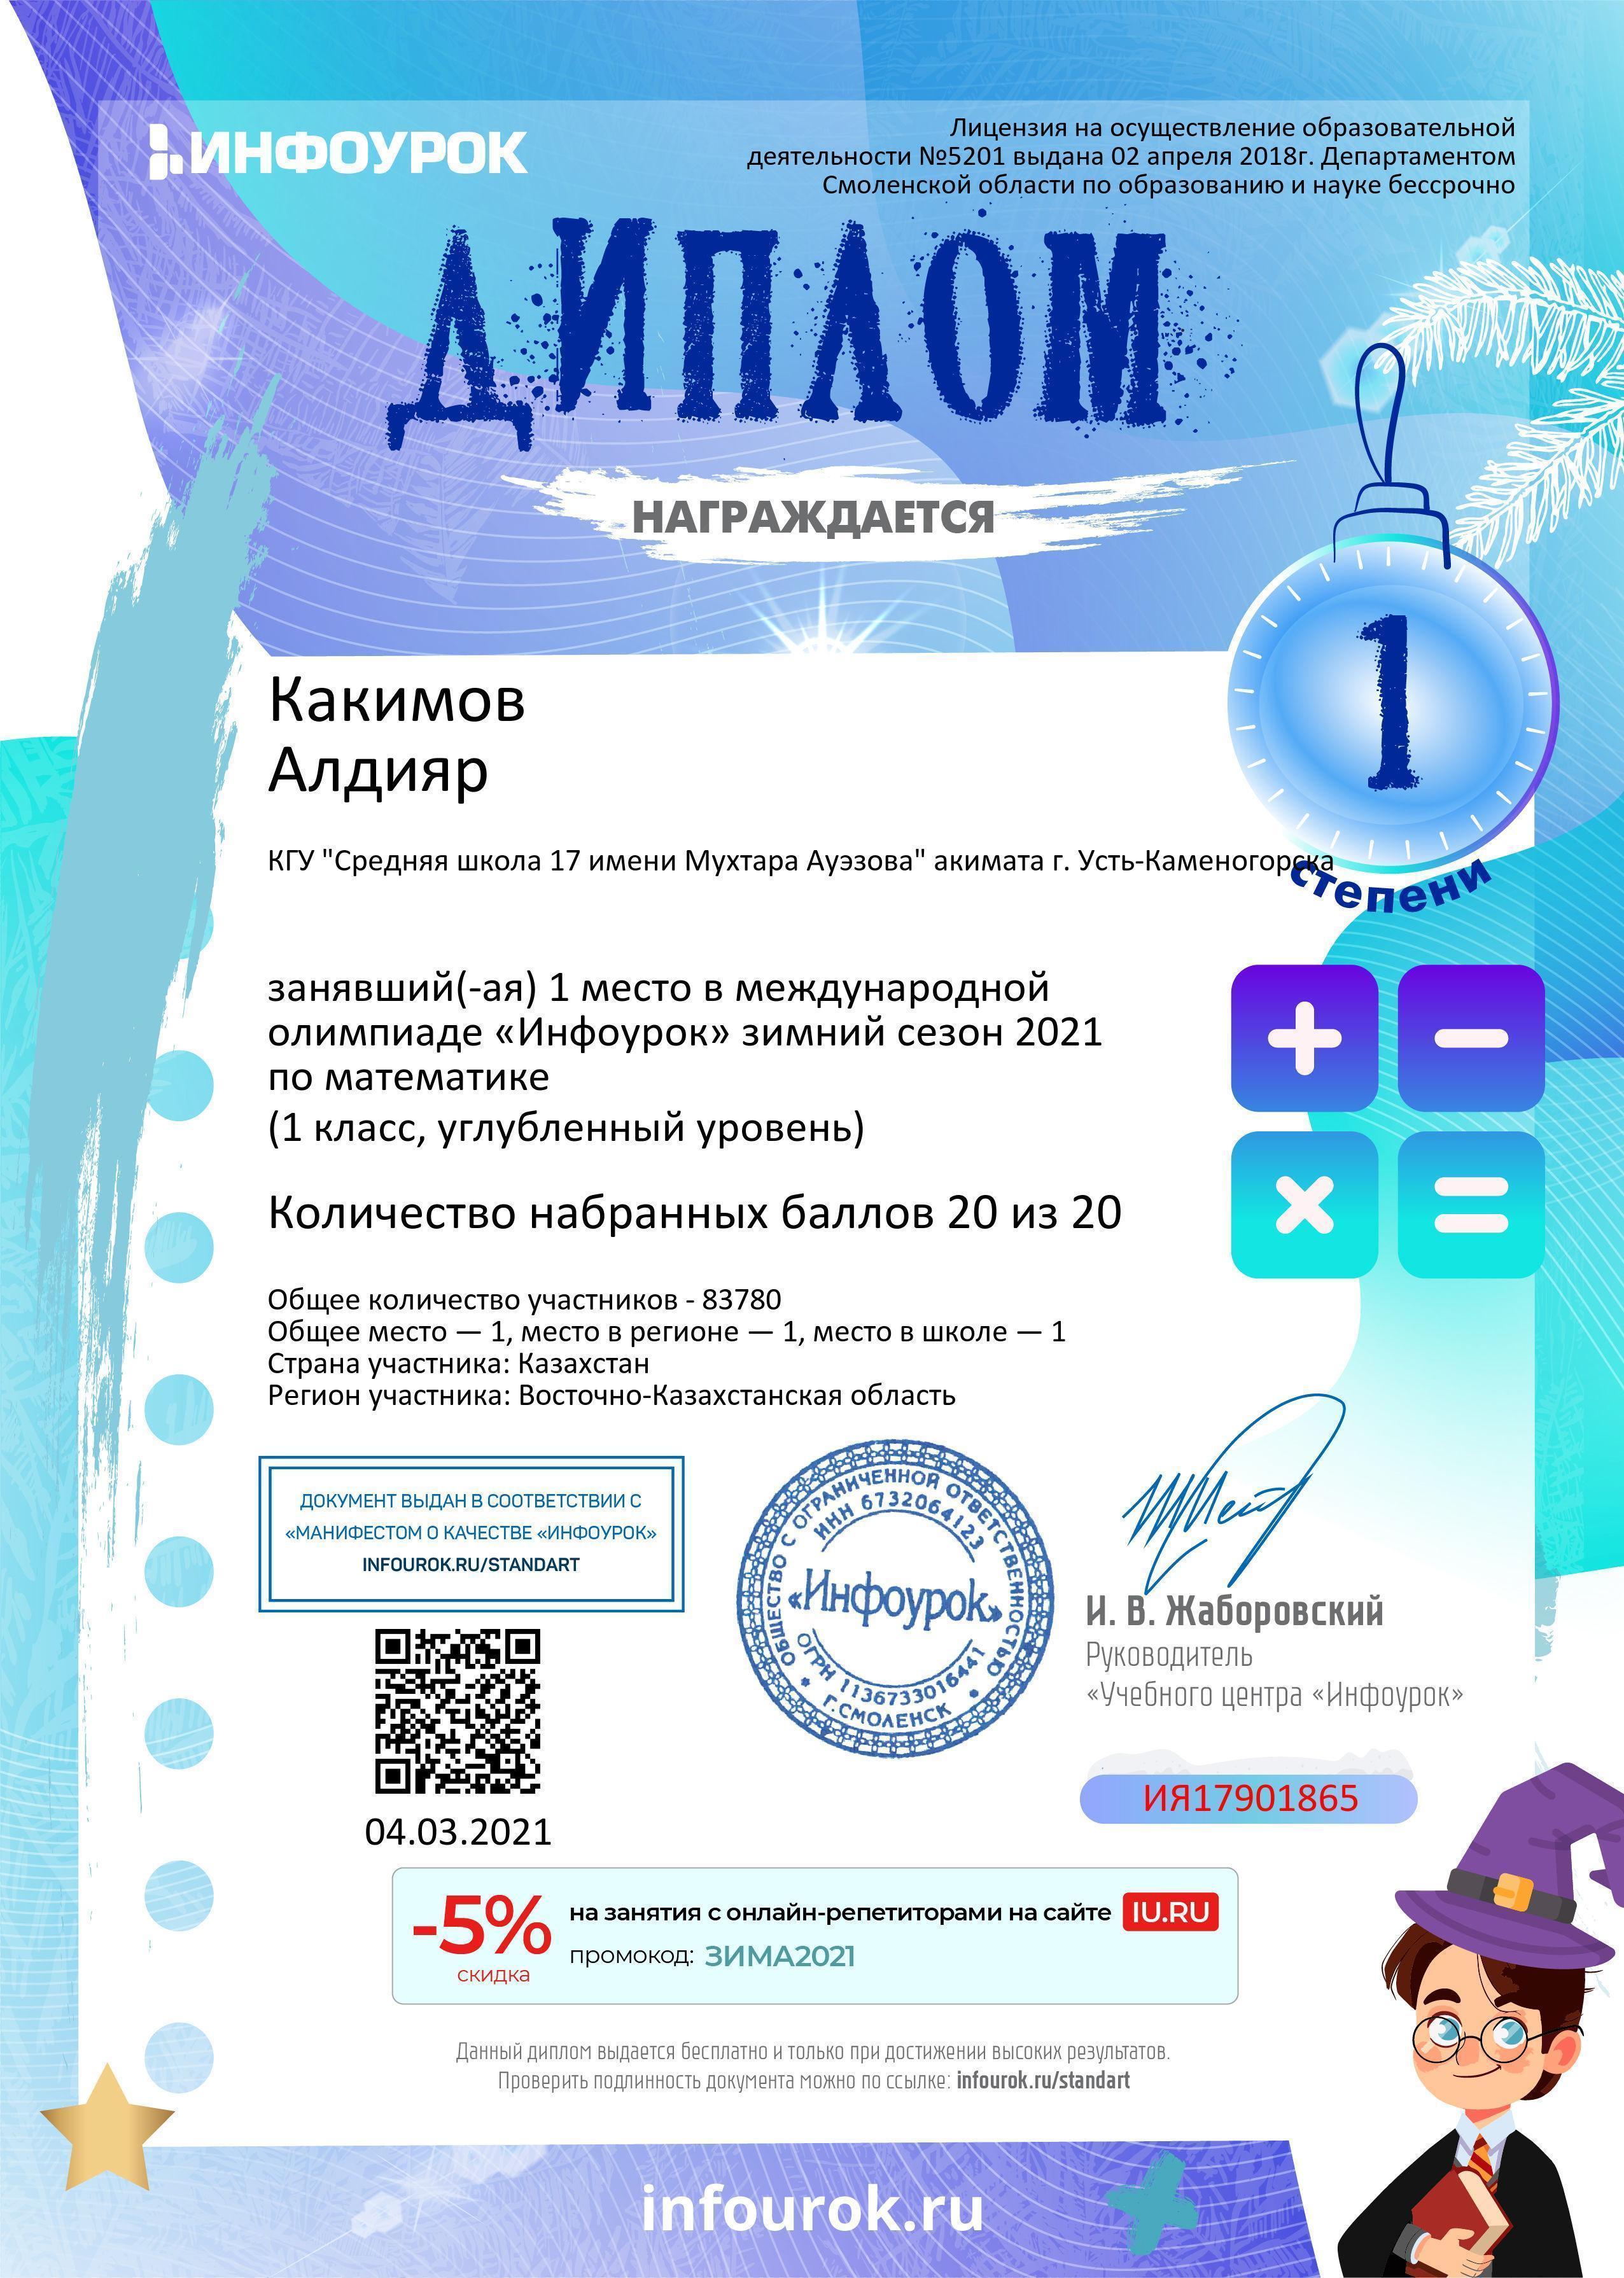 Призёры международной олимпиады «Инфоурок» по математике и русскому языку.